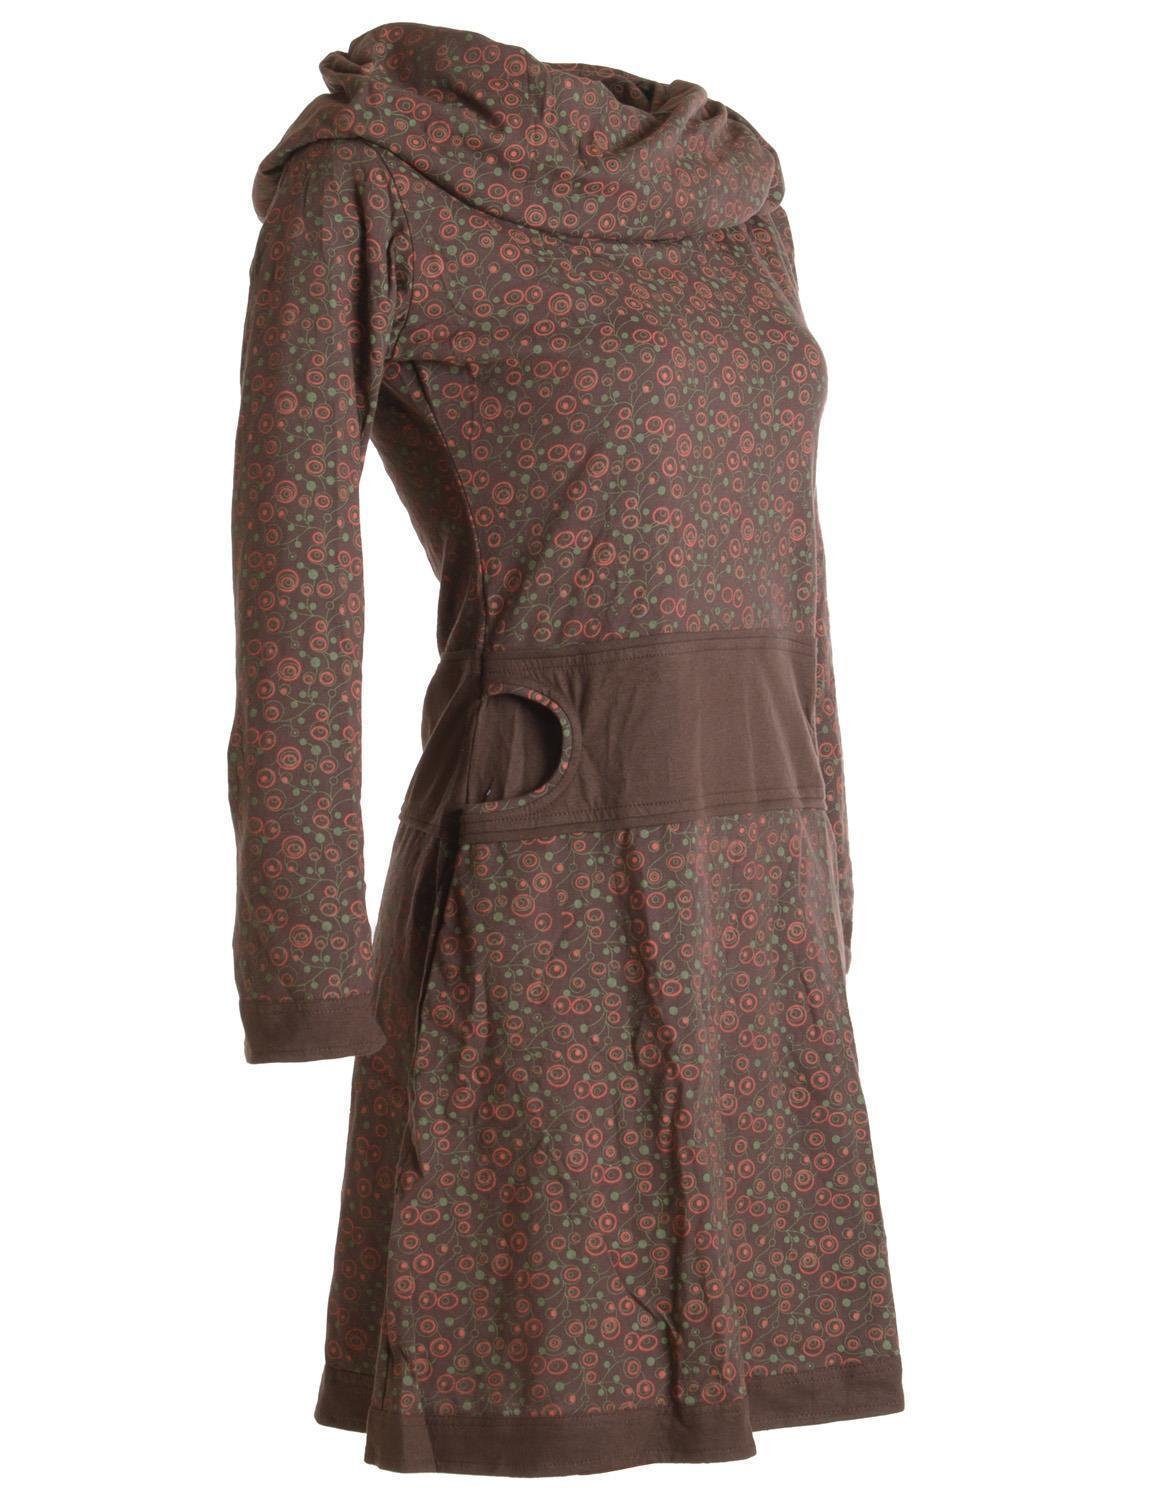 Bedrucktes Ethno, Jerseykleid Hippie mit Schalkragen Goa, Kleid Style Baumwolle dunkelbraun Boho, aus Vishes